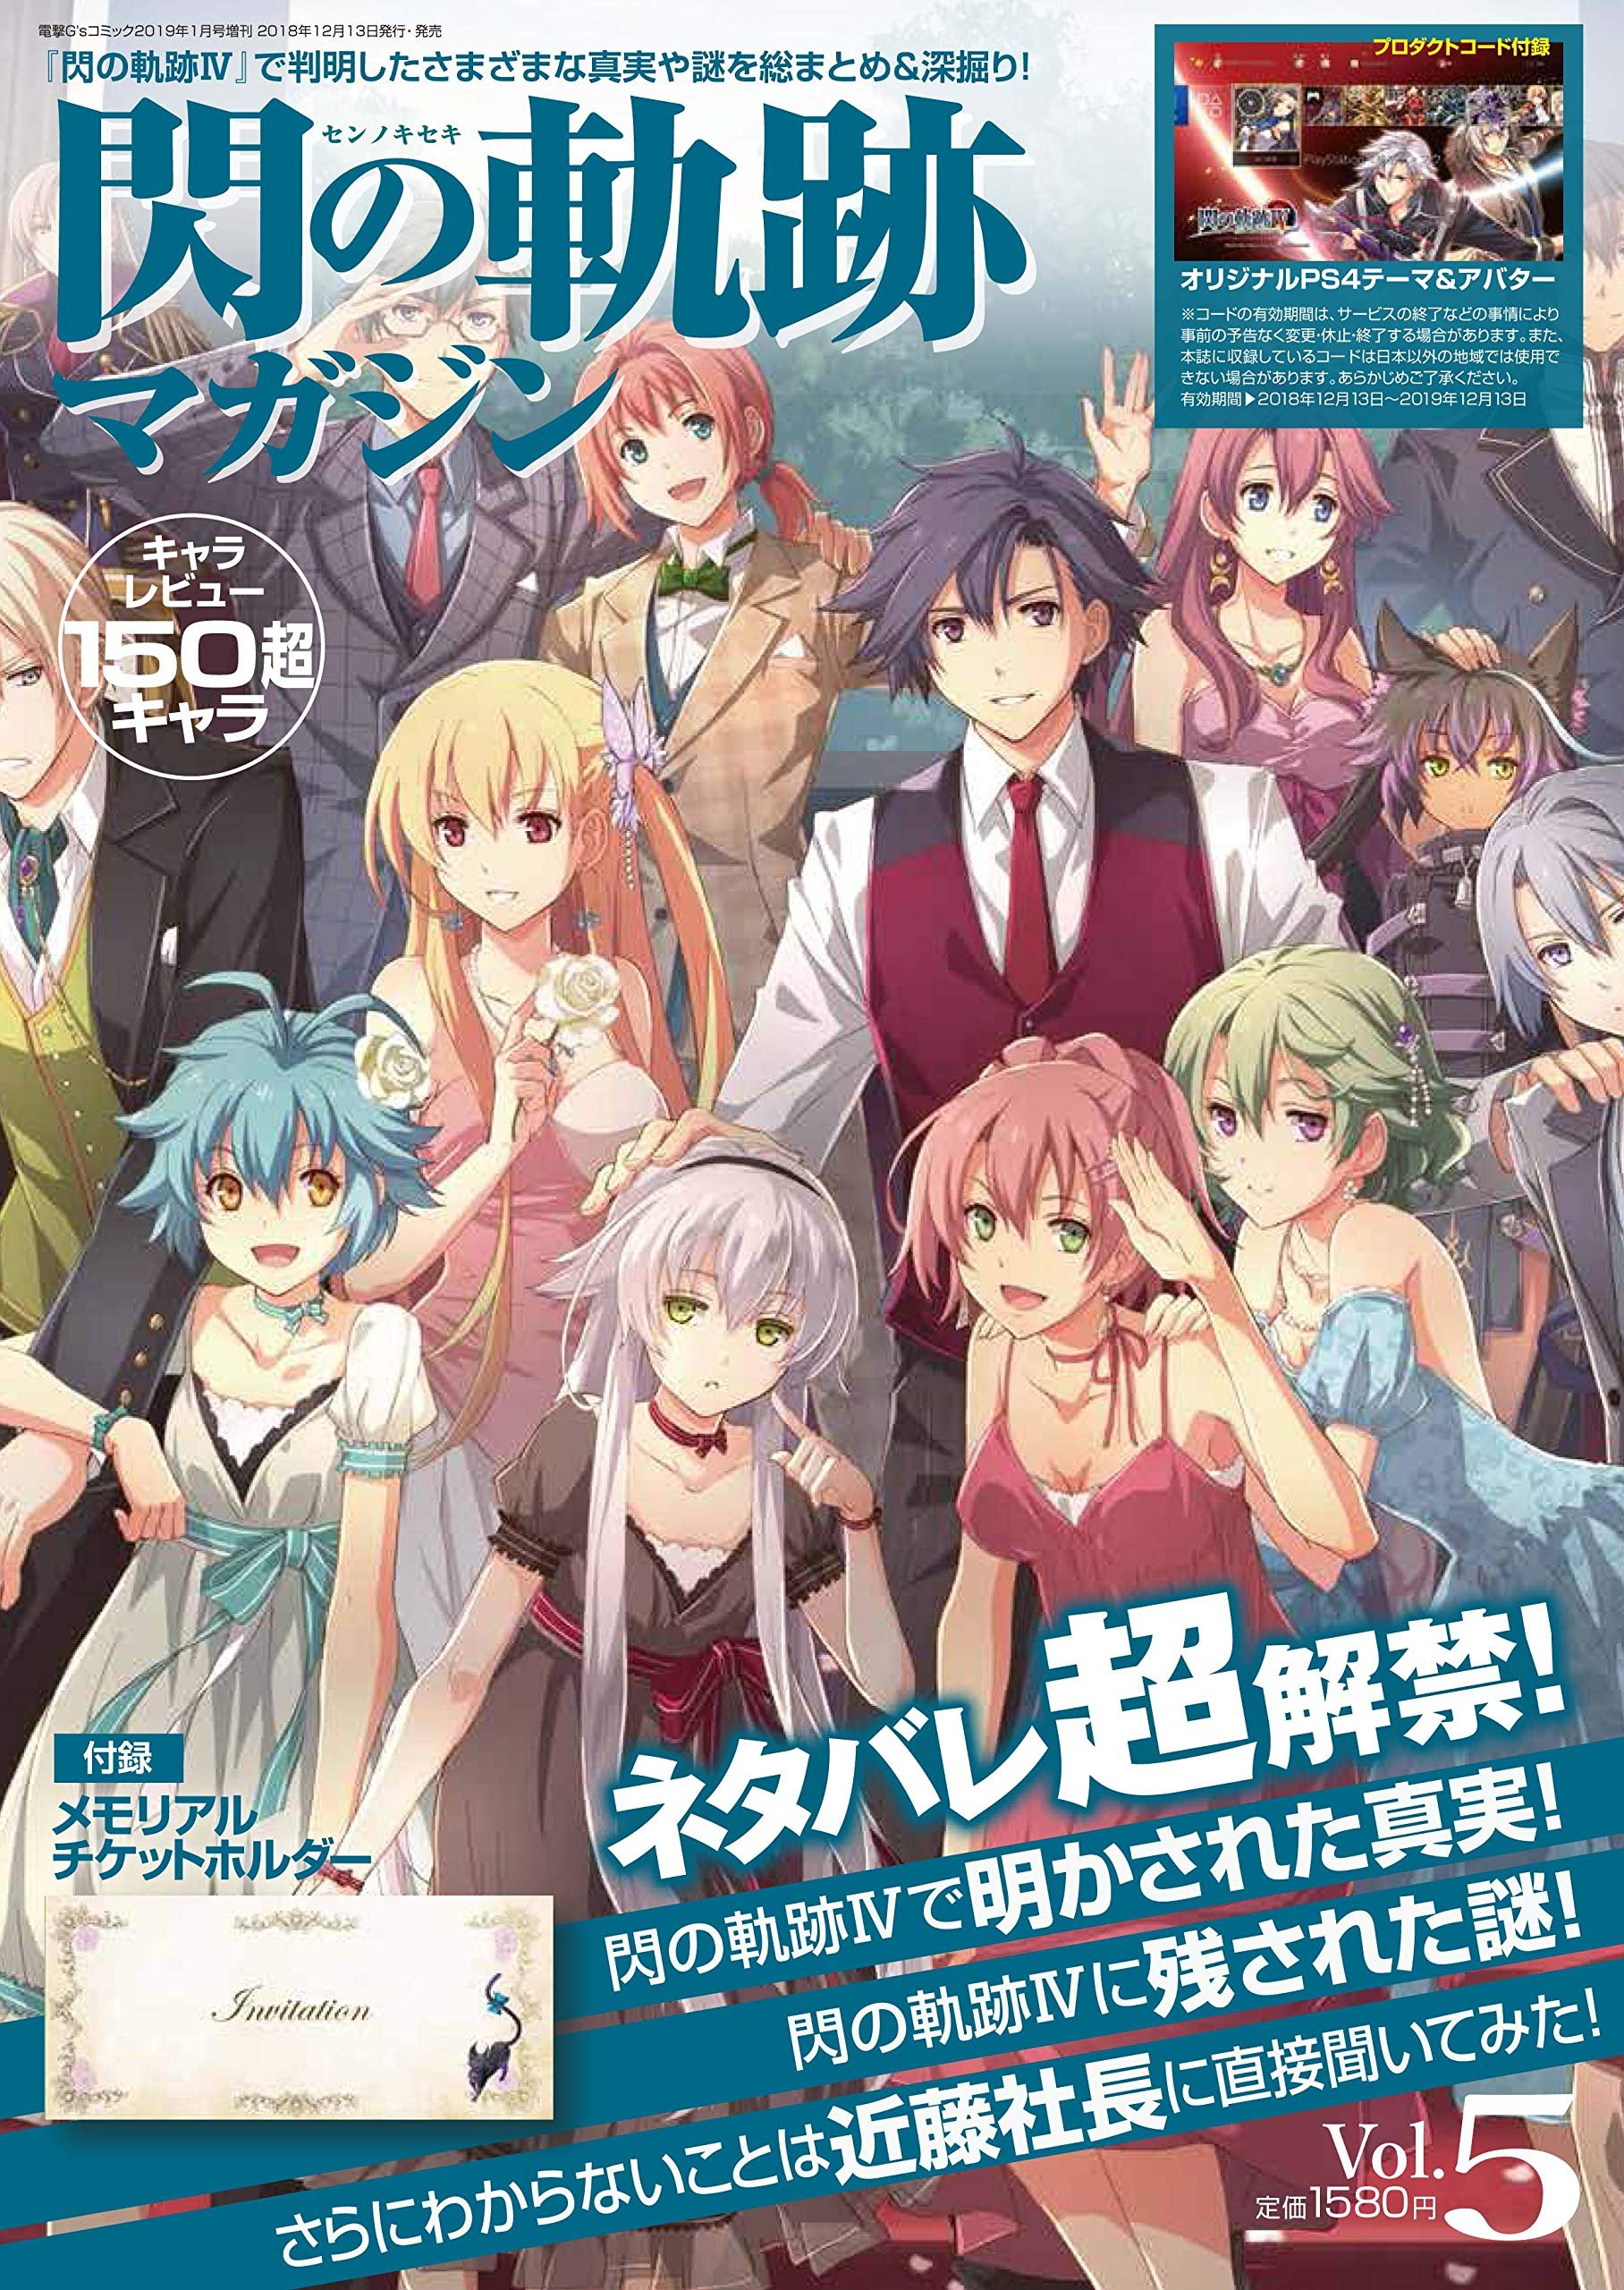 Sen no Kiseki Magazine Vol. 05 (January 2019) - Sen no Kiseki Magazine ...